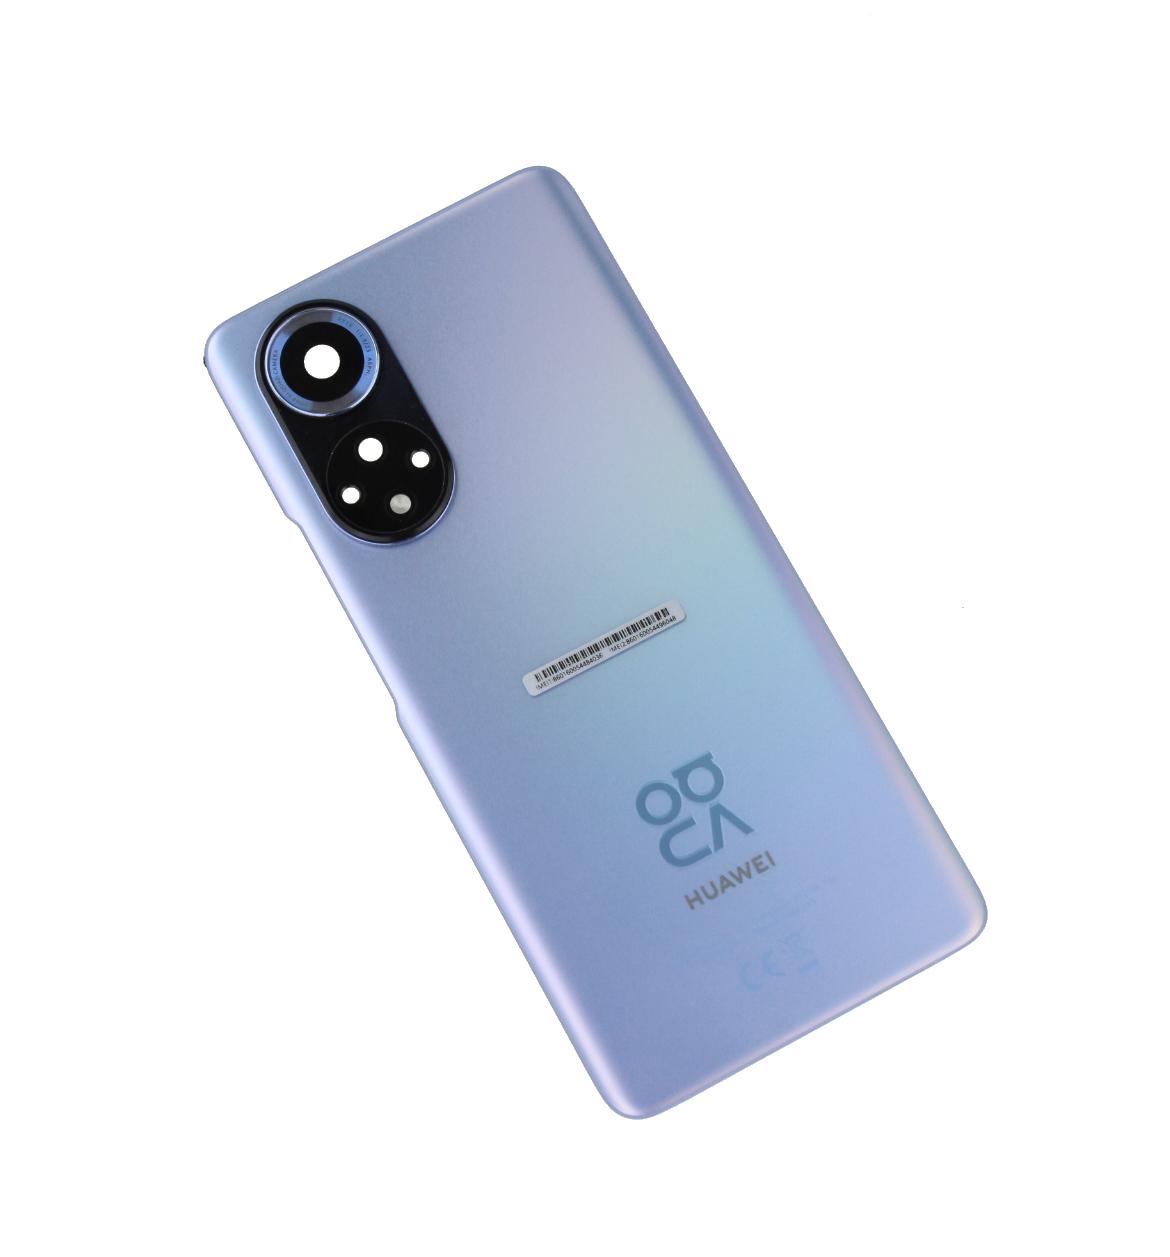 Originál kryt baterie Huawei Nova 9 modro-fialový - demontovaný díl Grade A